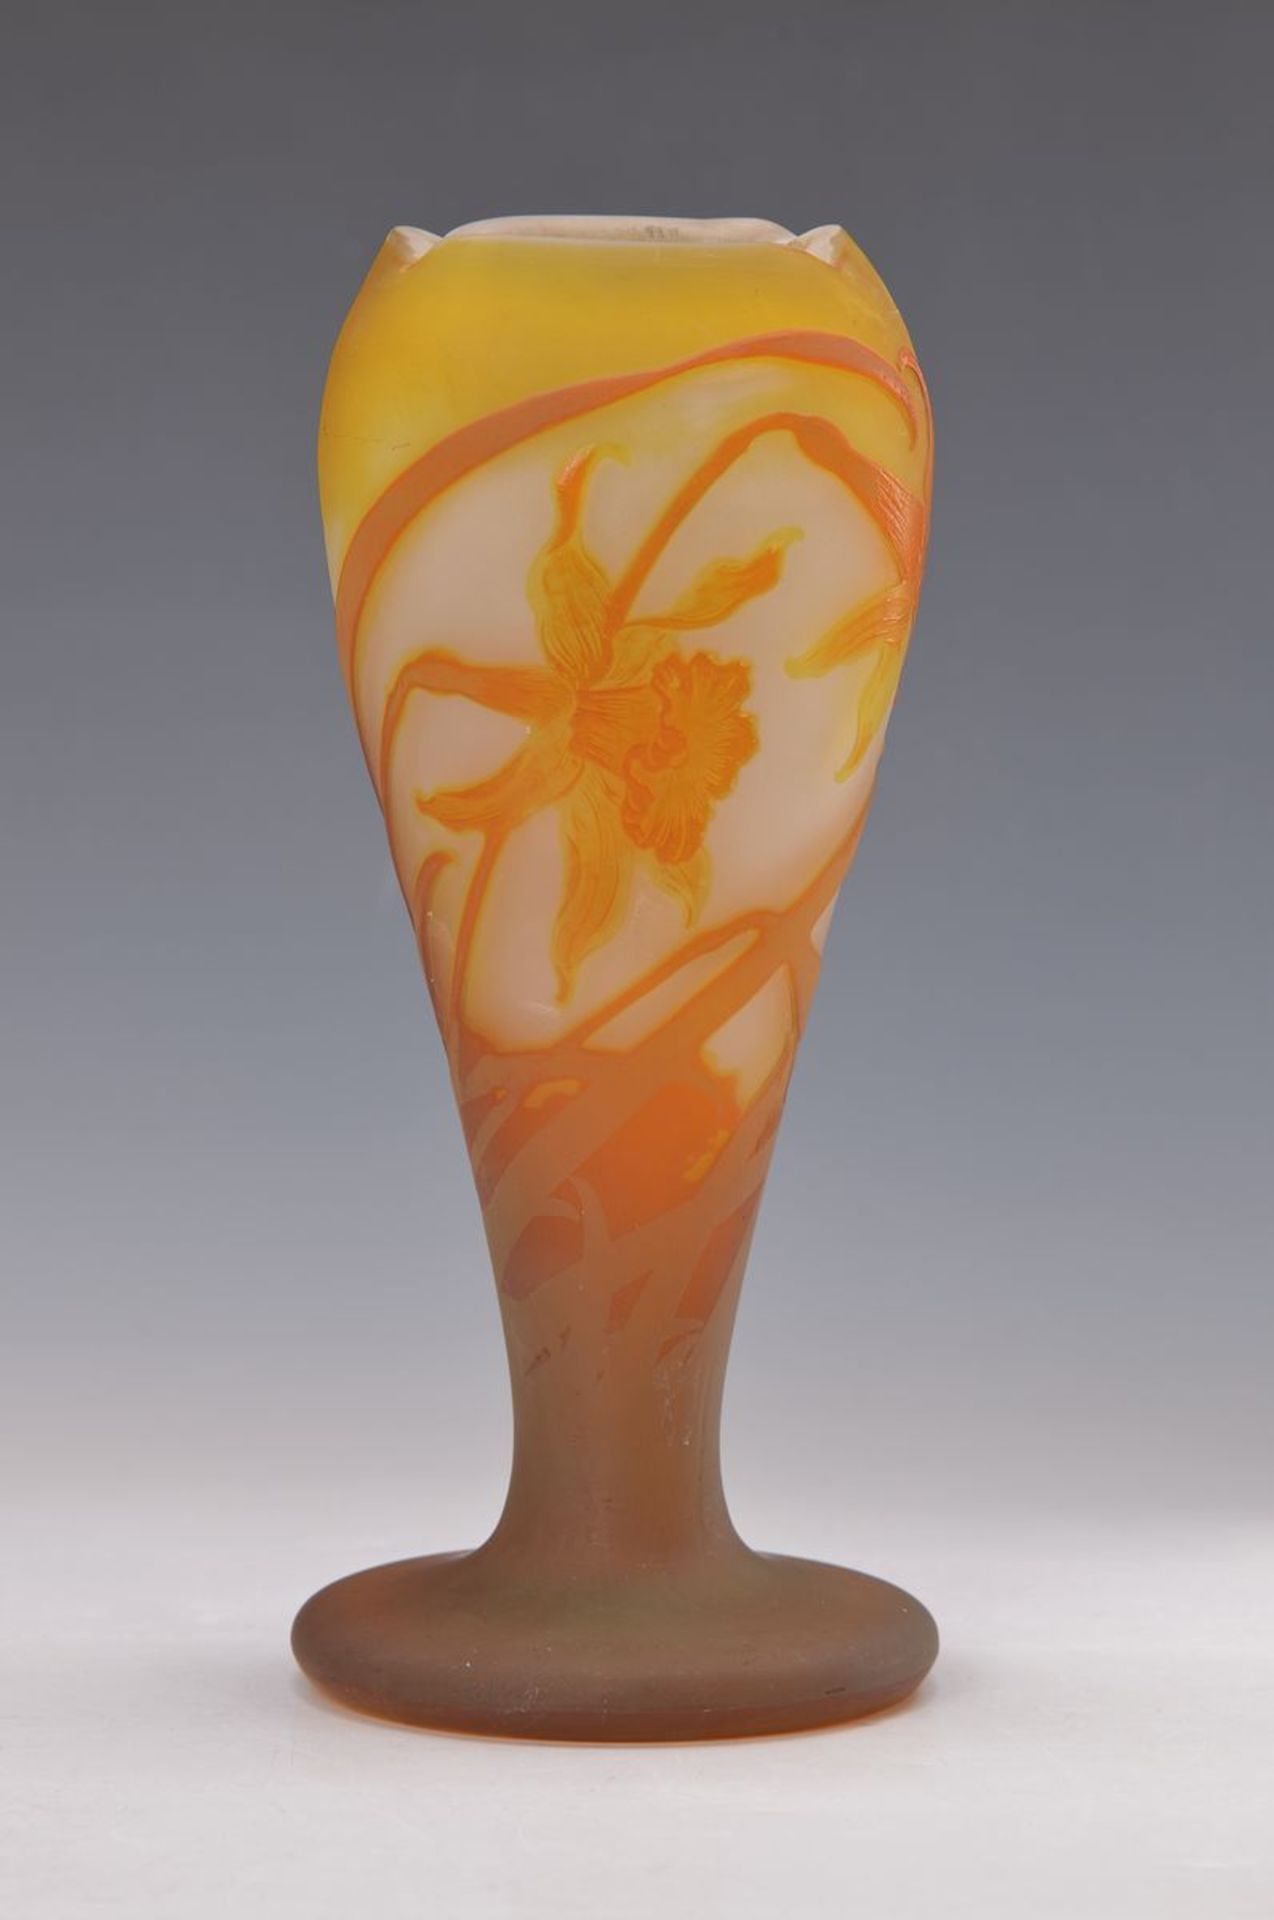 Vase, Gallé, um 1905-10, Probestück, farbloses Schichtglas, weiss und gelb eingepudert, orange-rot